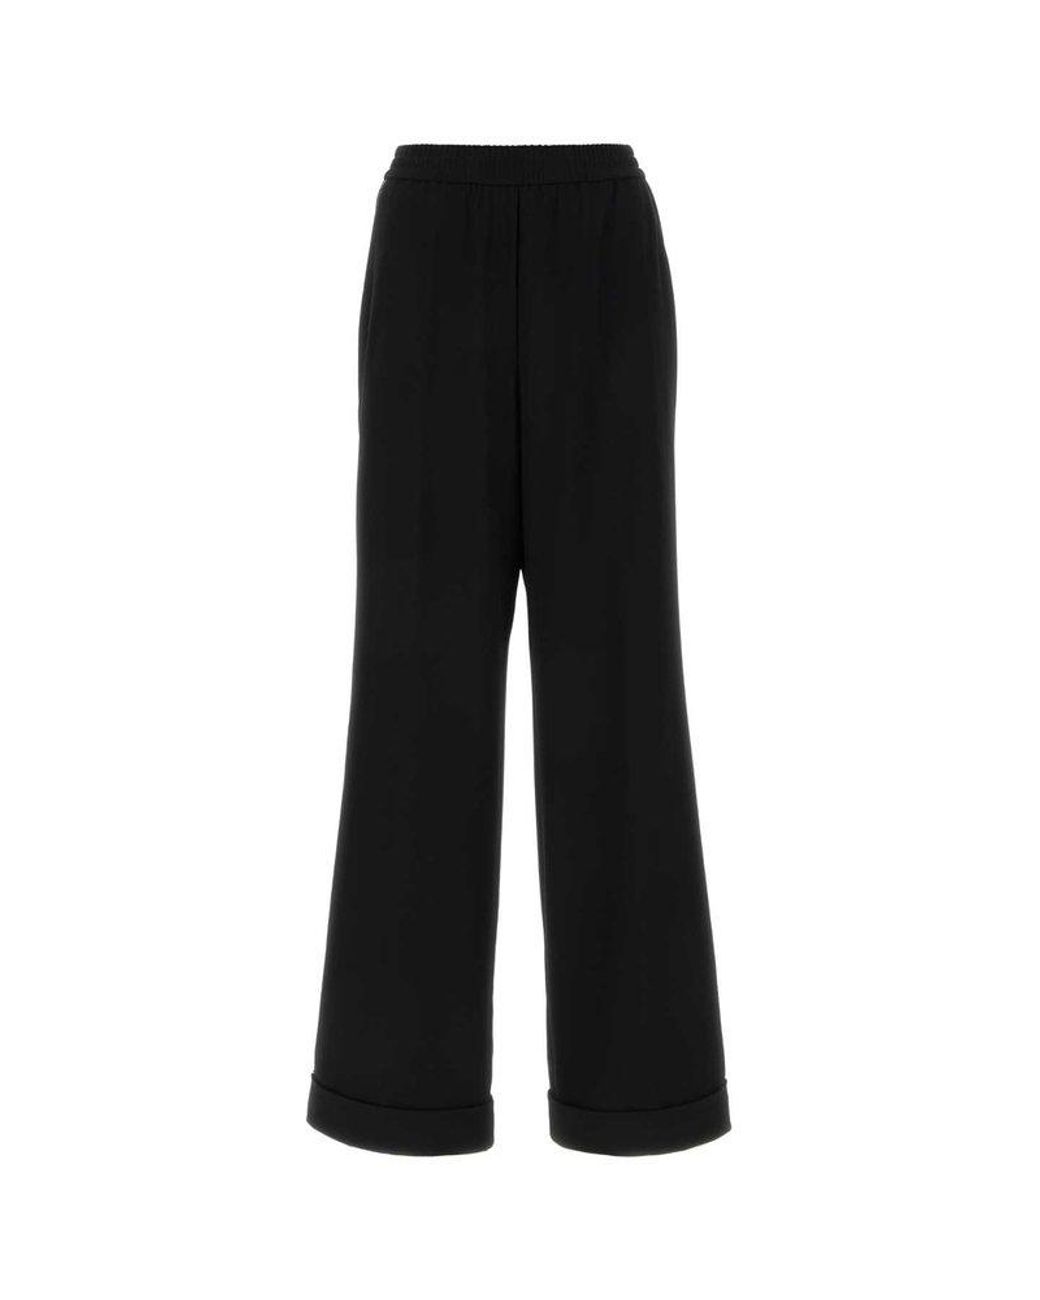 Dolce & Gabbana Kim Pajama Pants in Black | Lyst